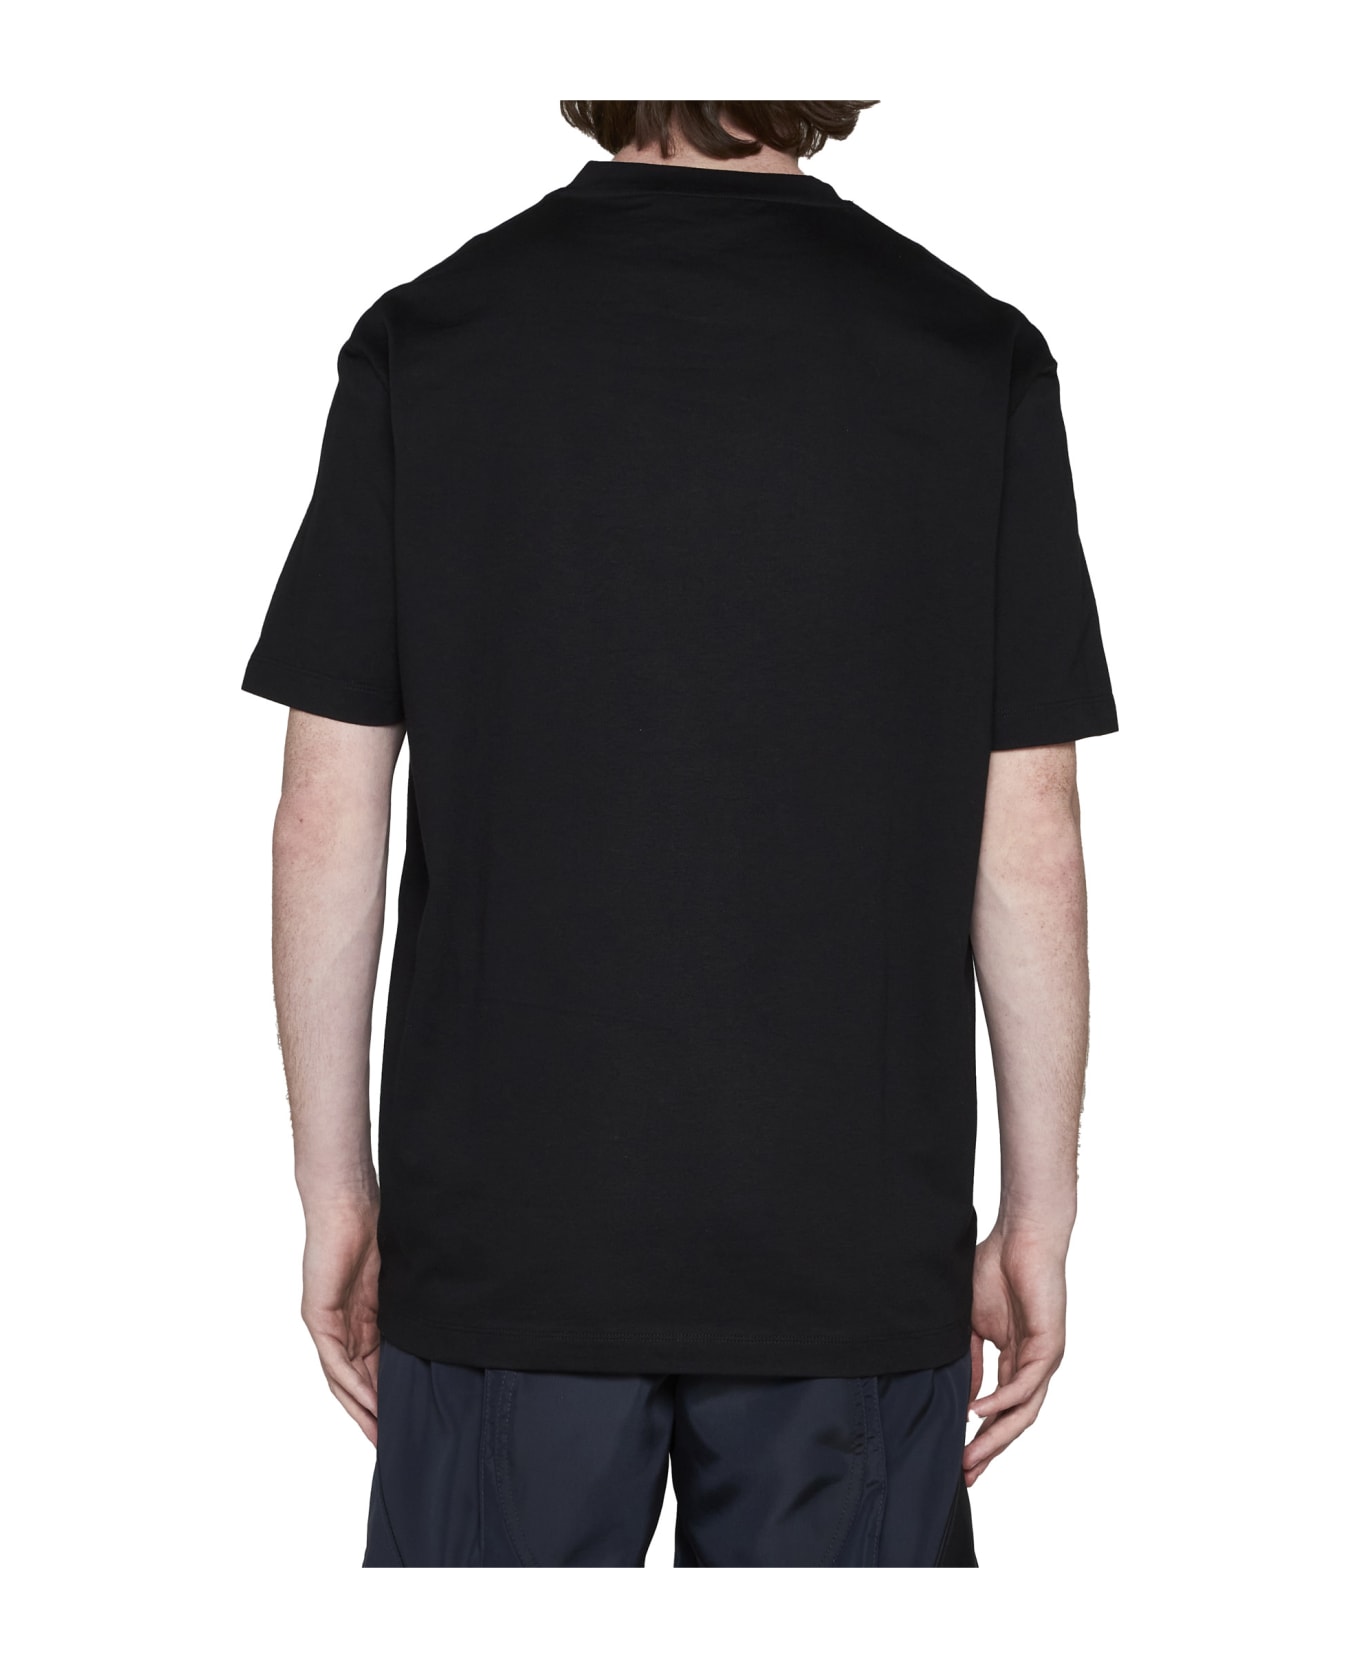 Versace T-Shirt - Nero